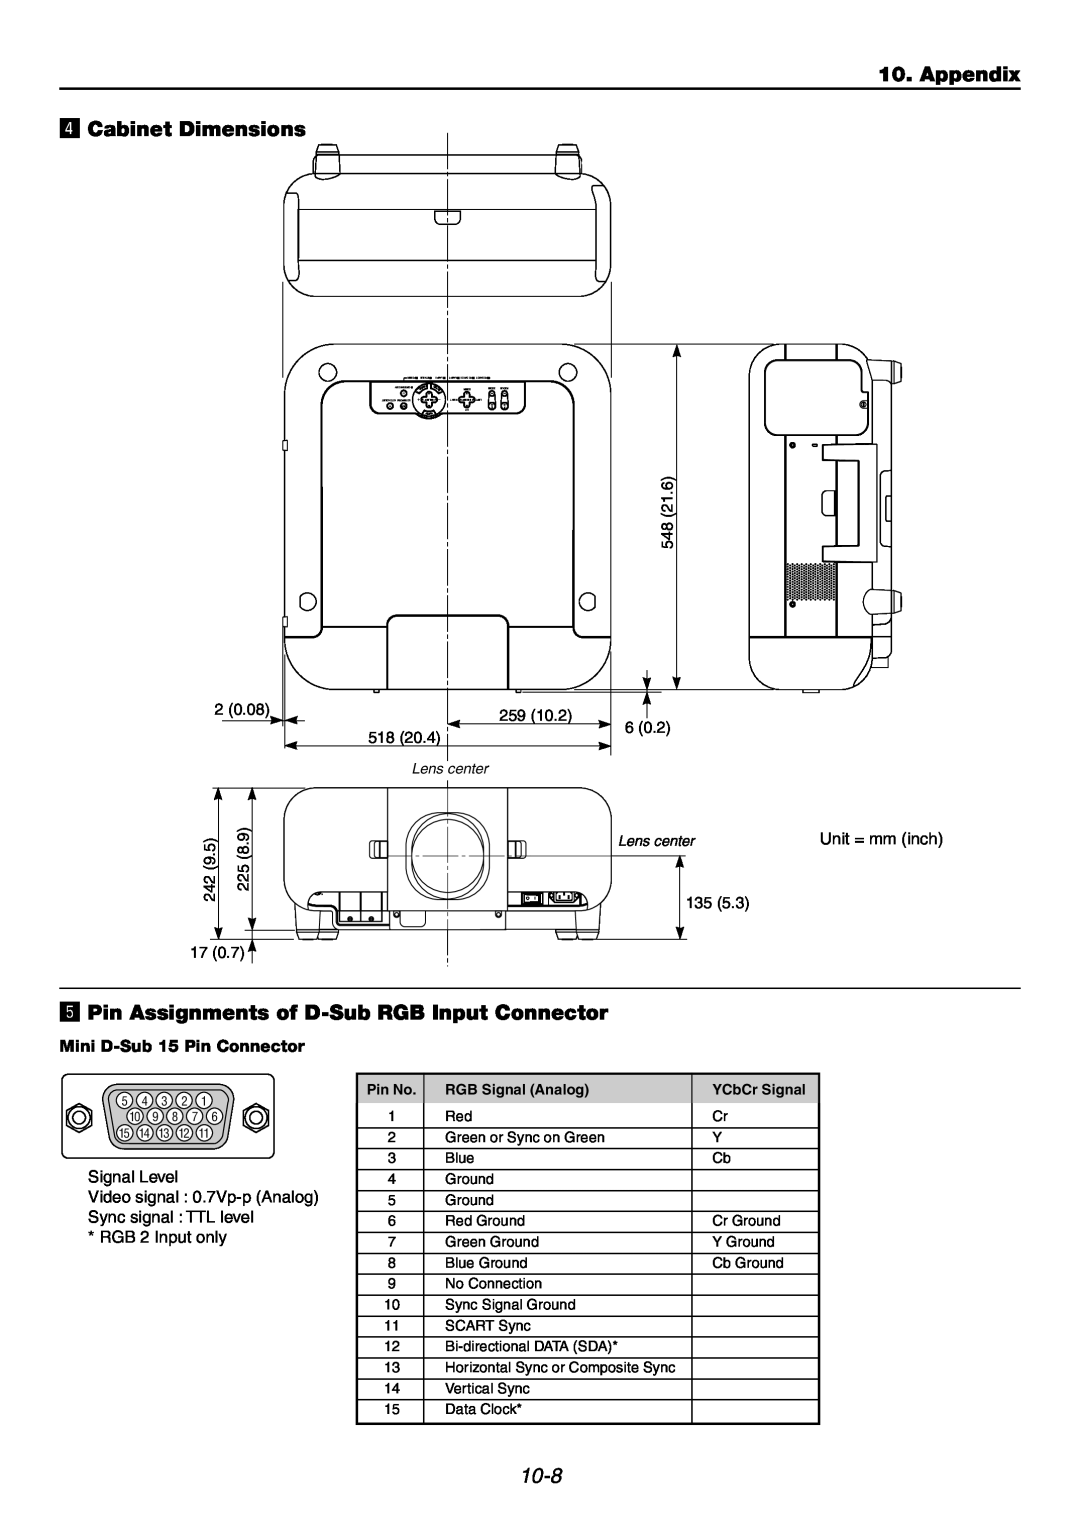 NEC GT6000 Appendix v Cabinet Dimensions, b Pin Assignments of D-SubRGB Input Connector, 10-8, Mini D-Sub15 Pin Connector 